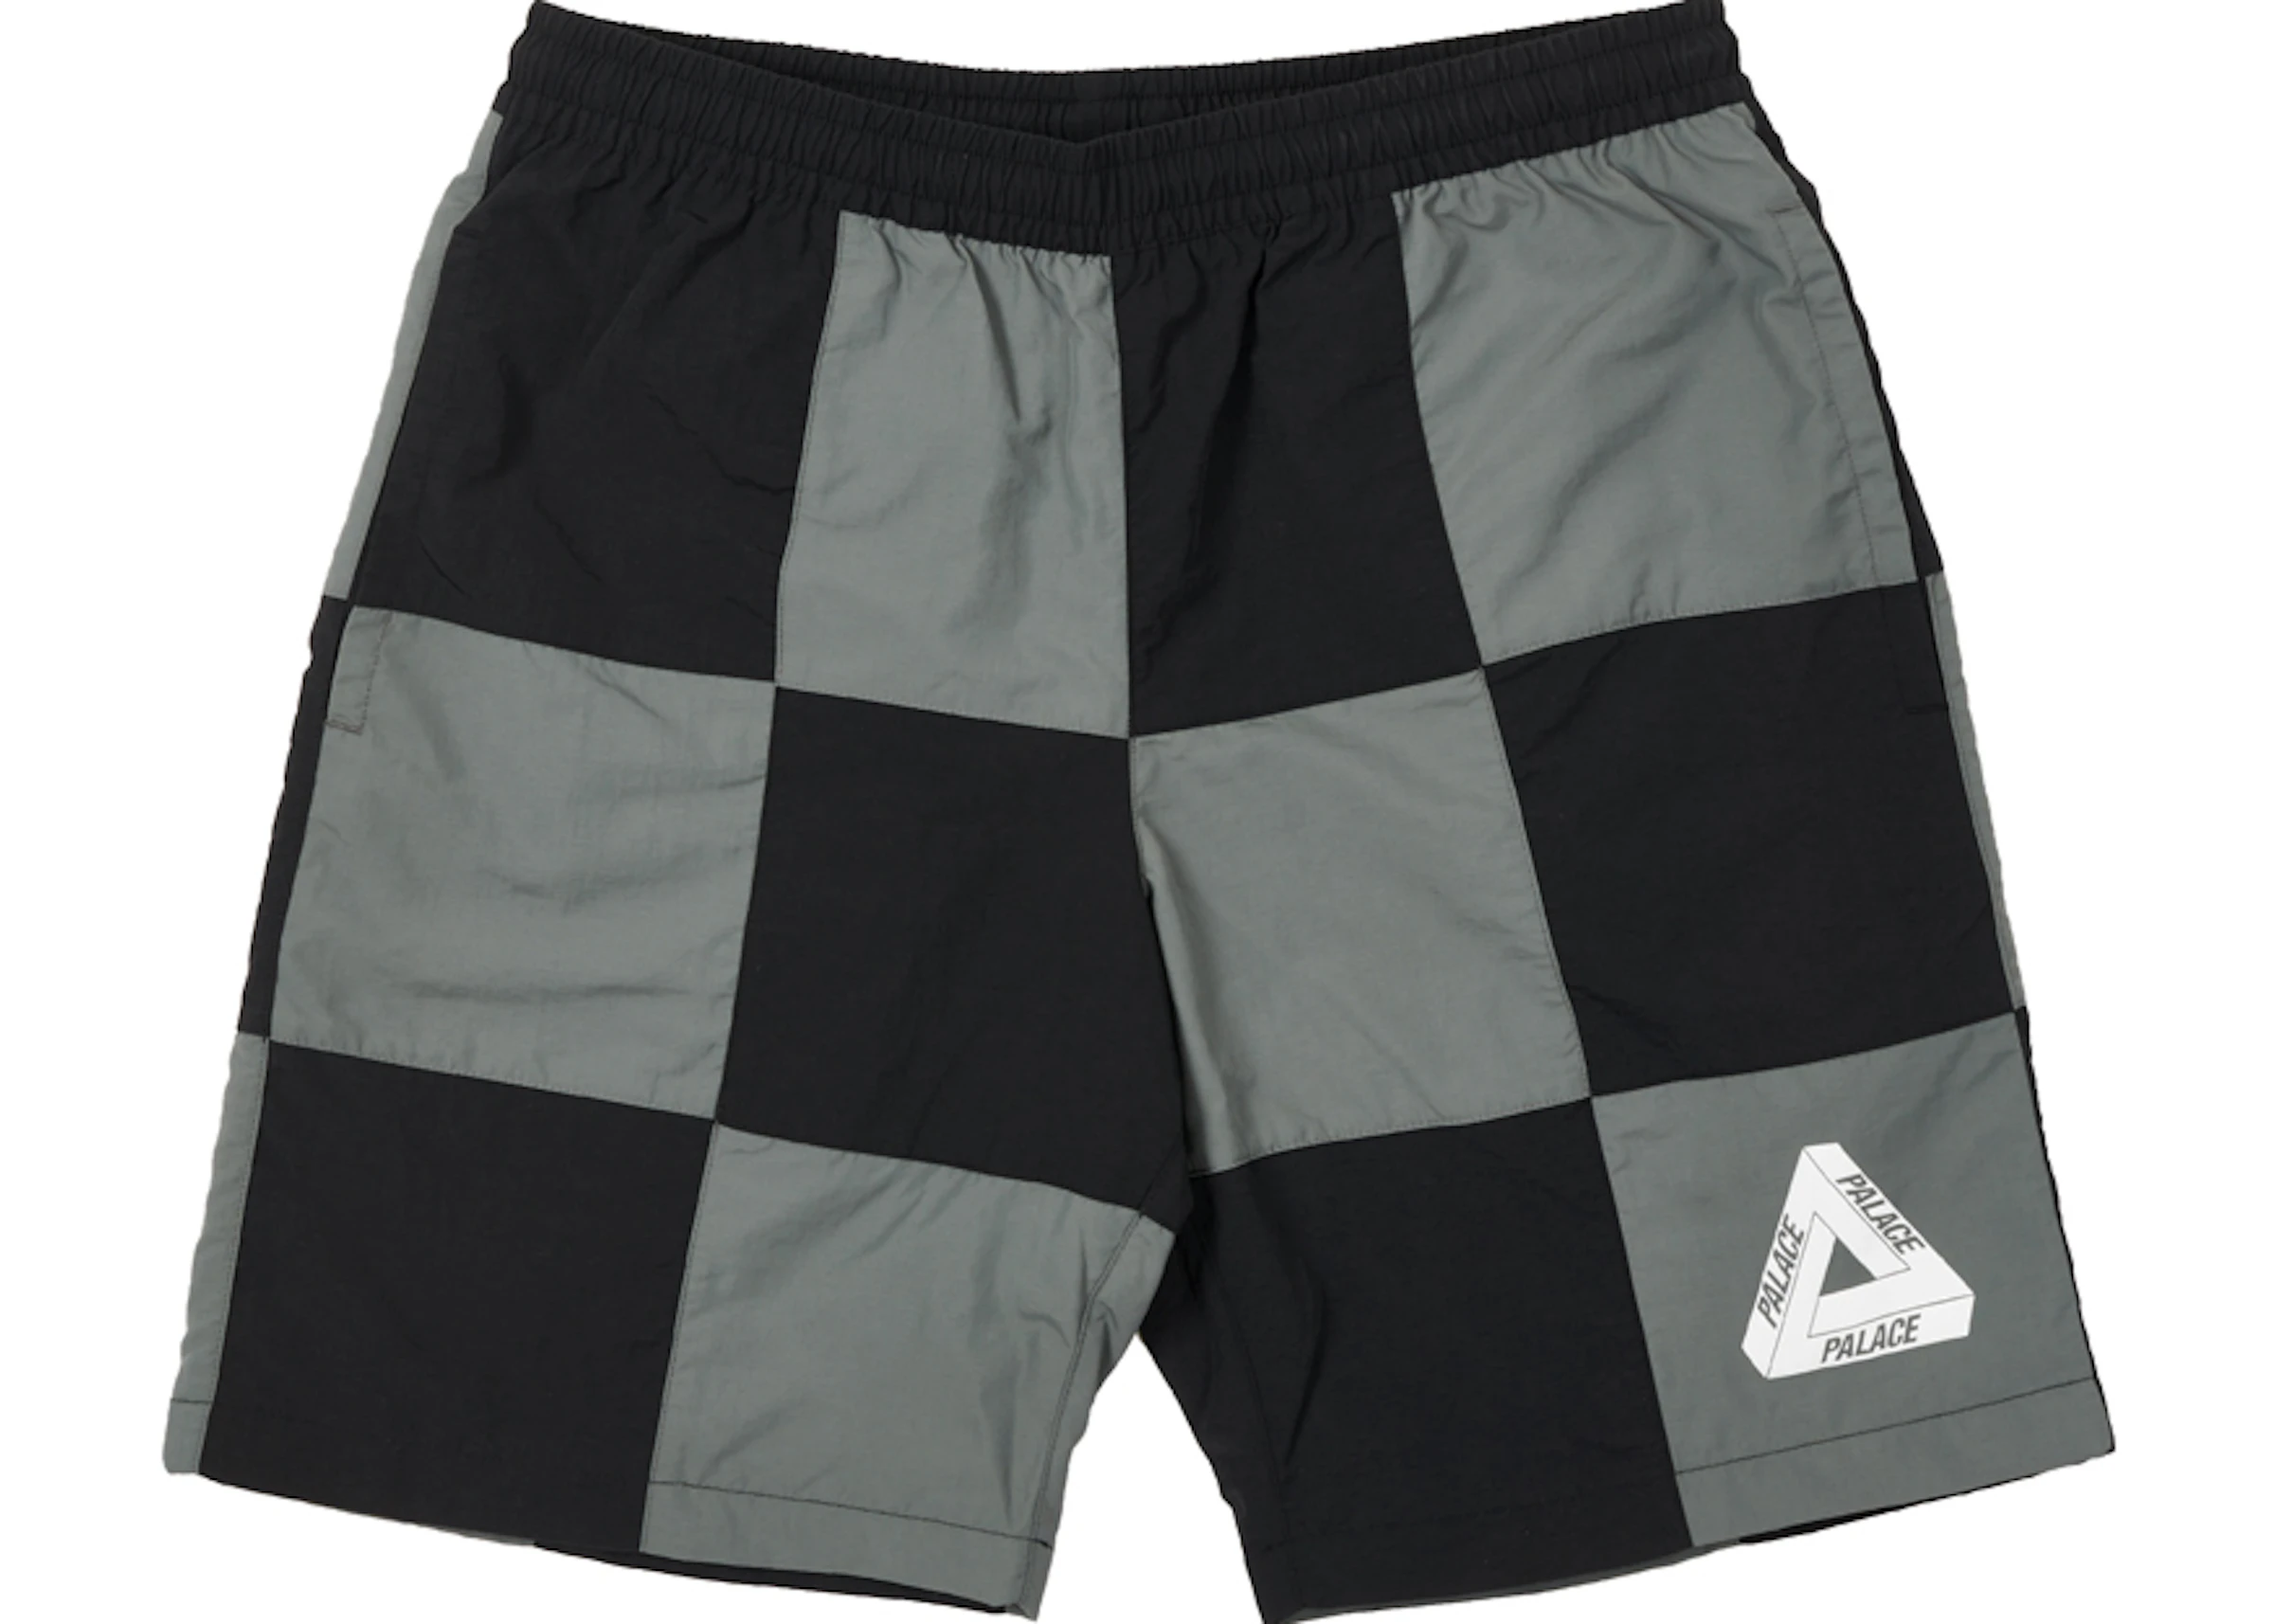 Palace Stitch Up Shell Shorts Black/Charcoal - SS21 - US